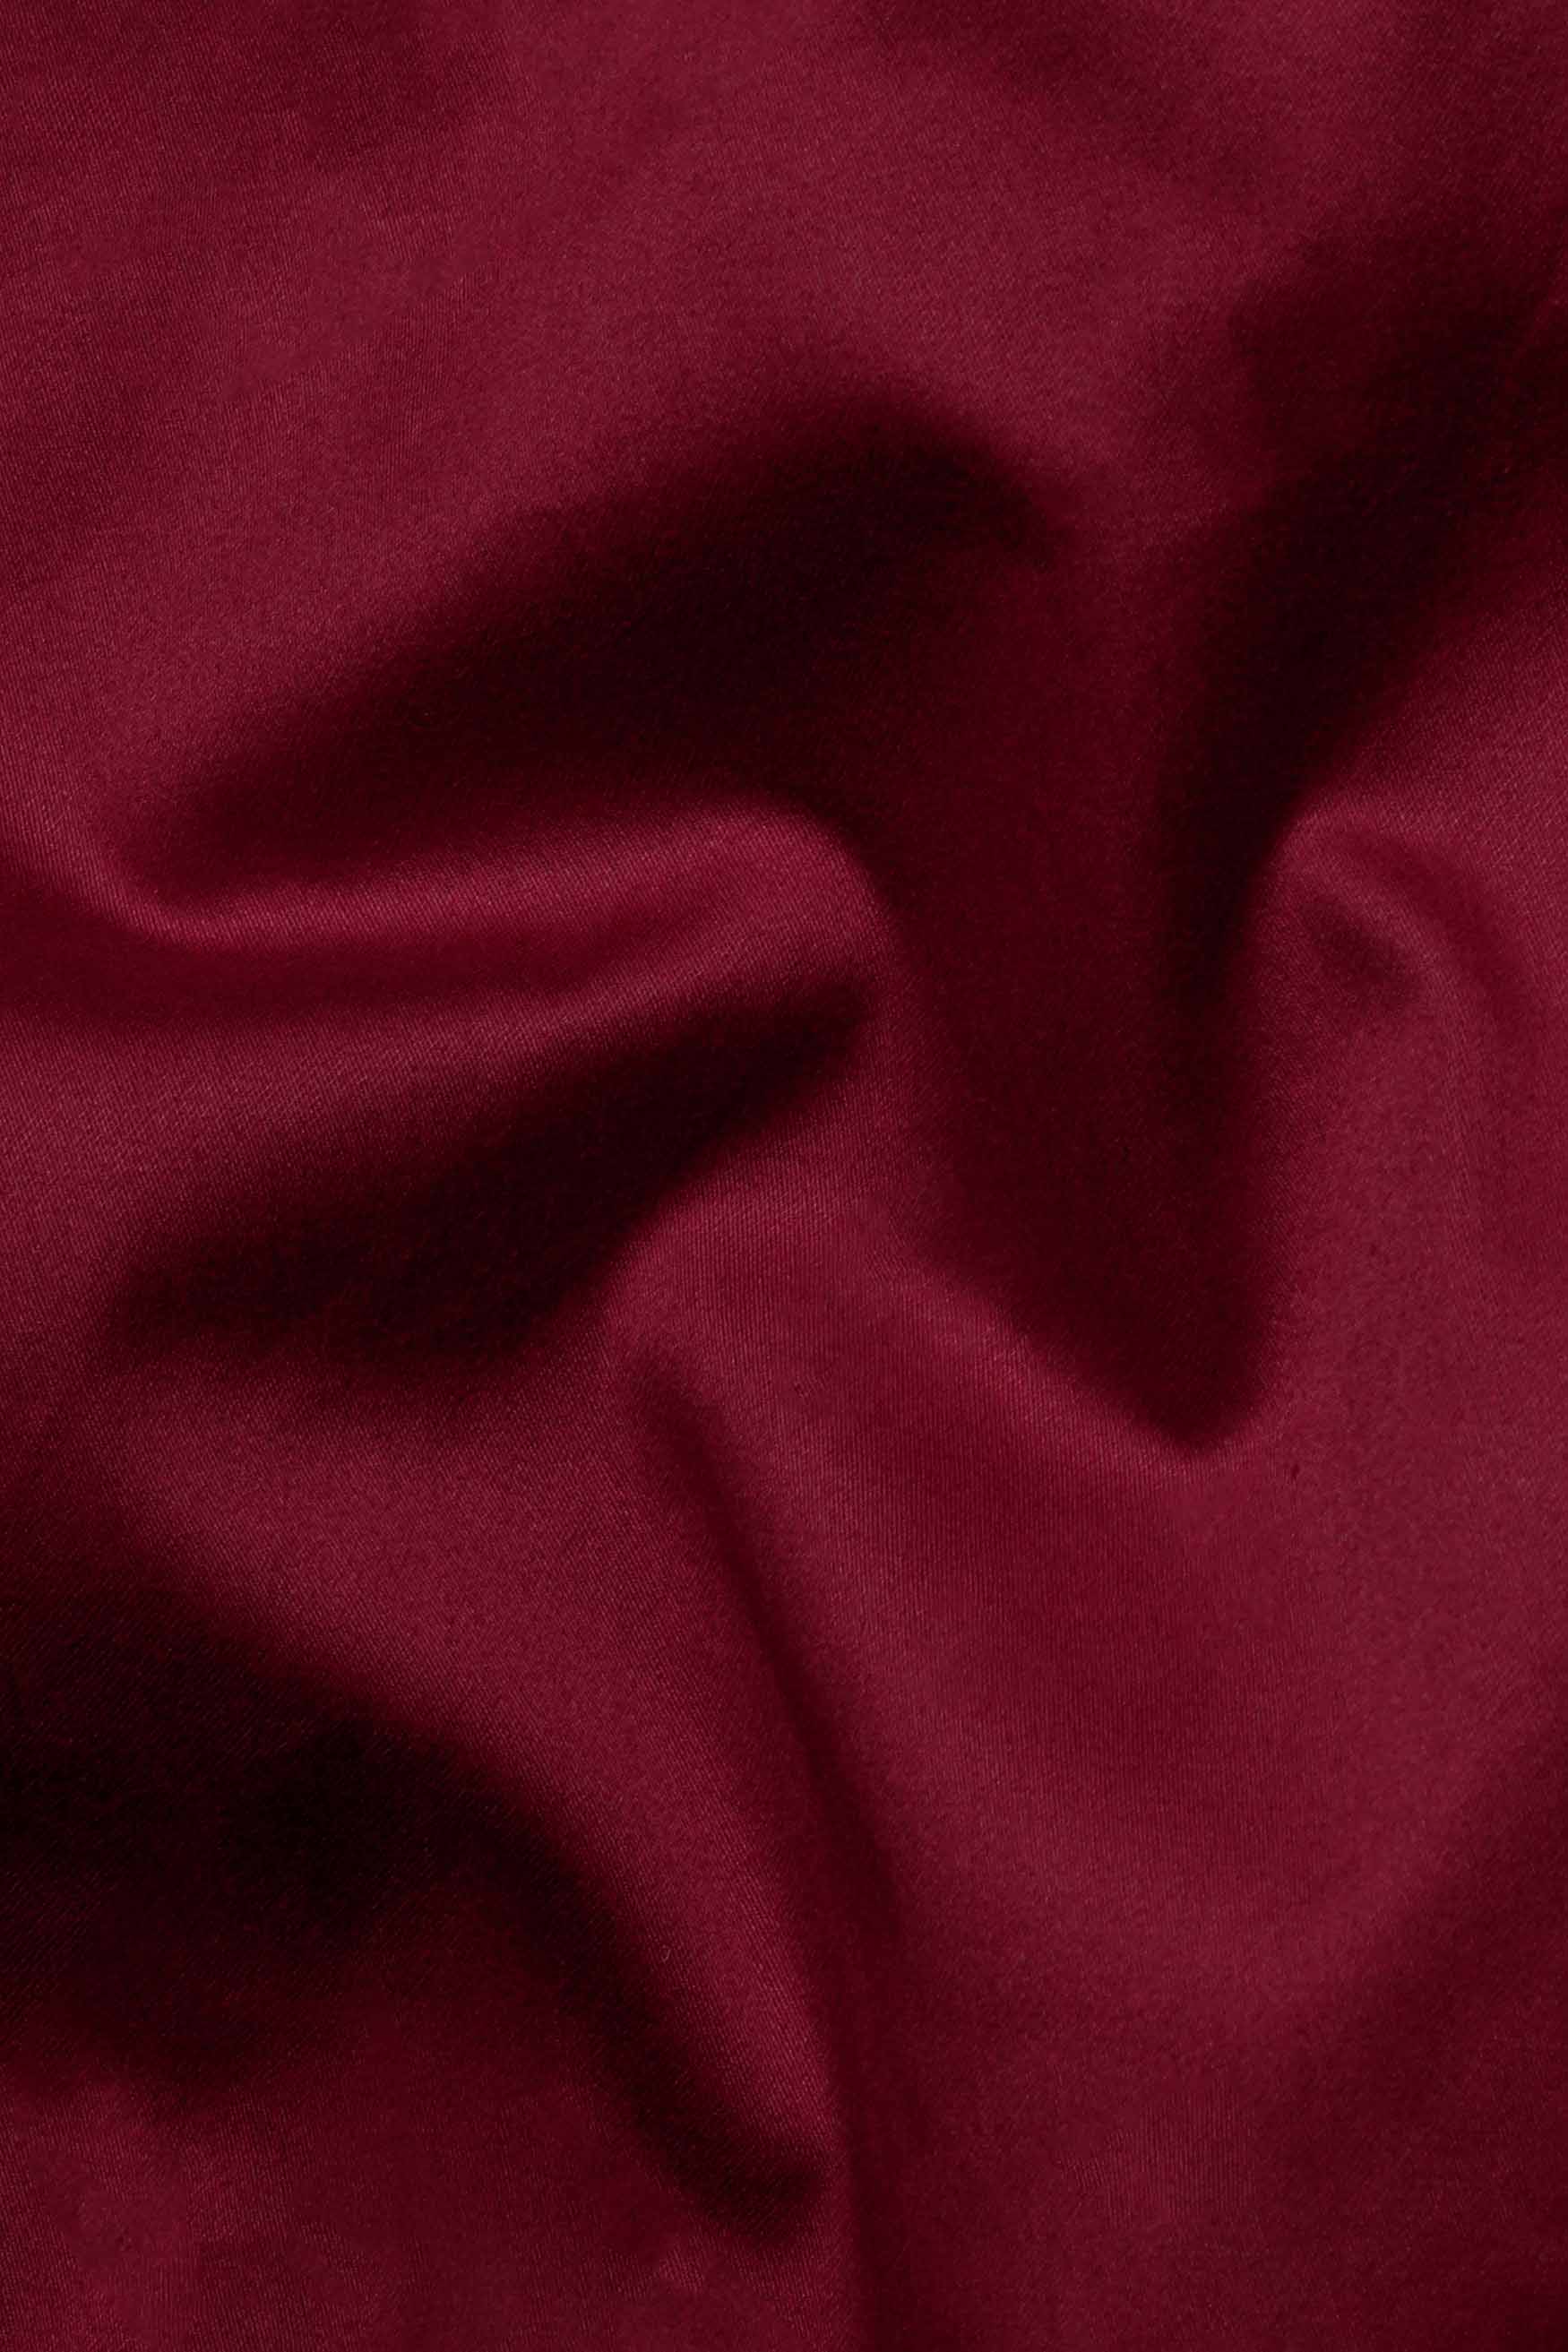 Bordeaux Red Subtle Sheen Super Soft Premium Cotton Tuxedo Shirt